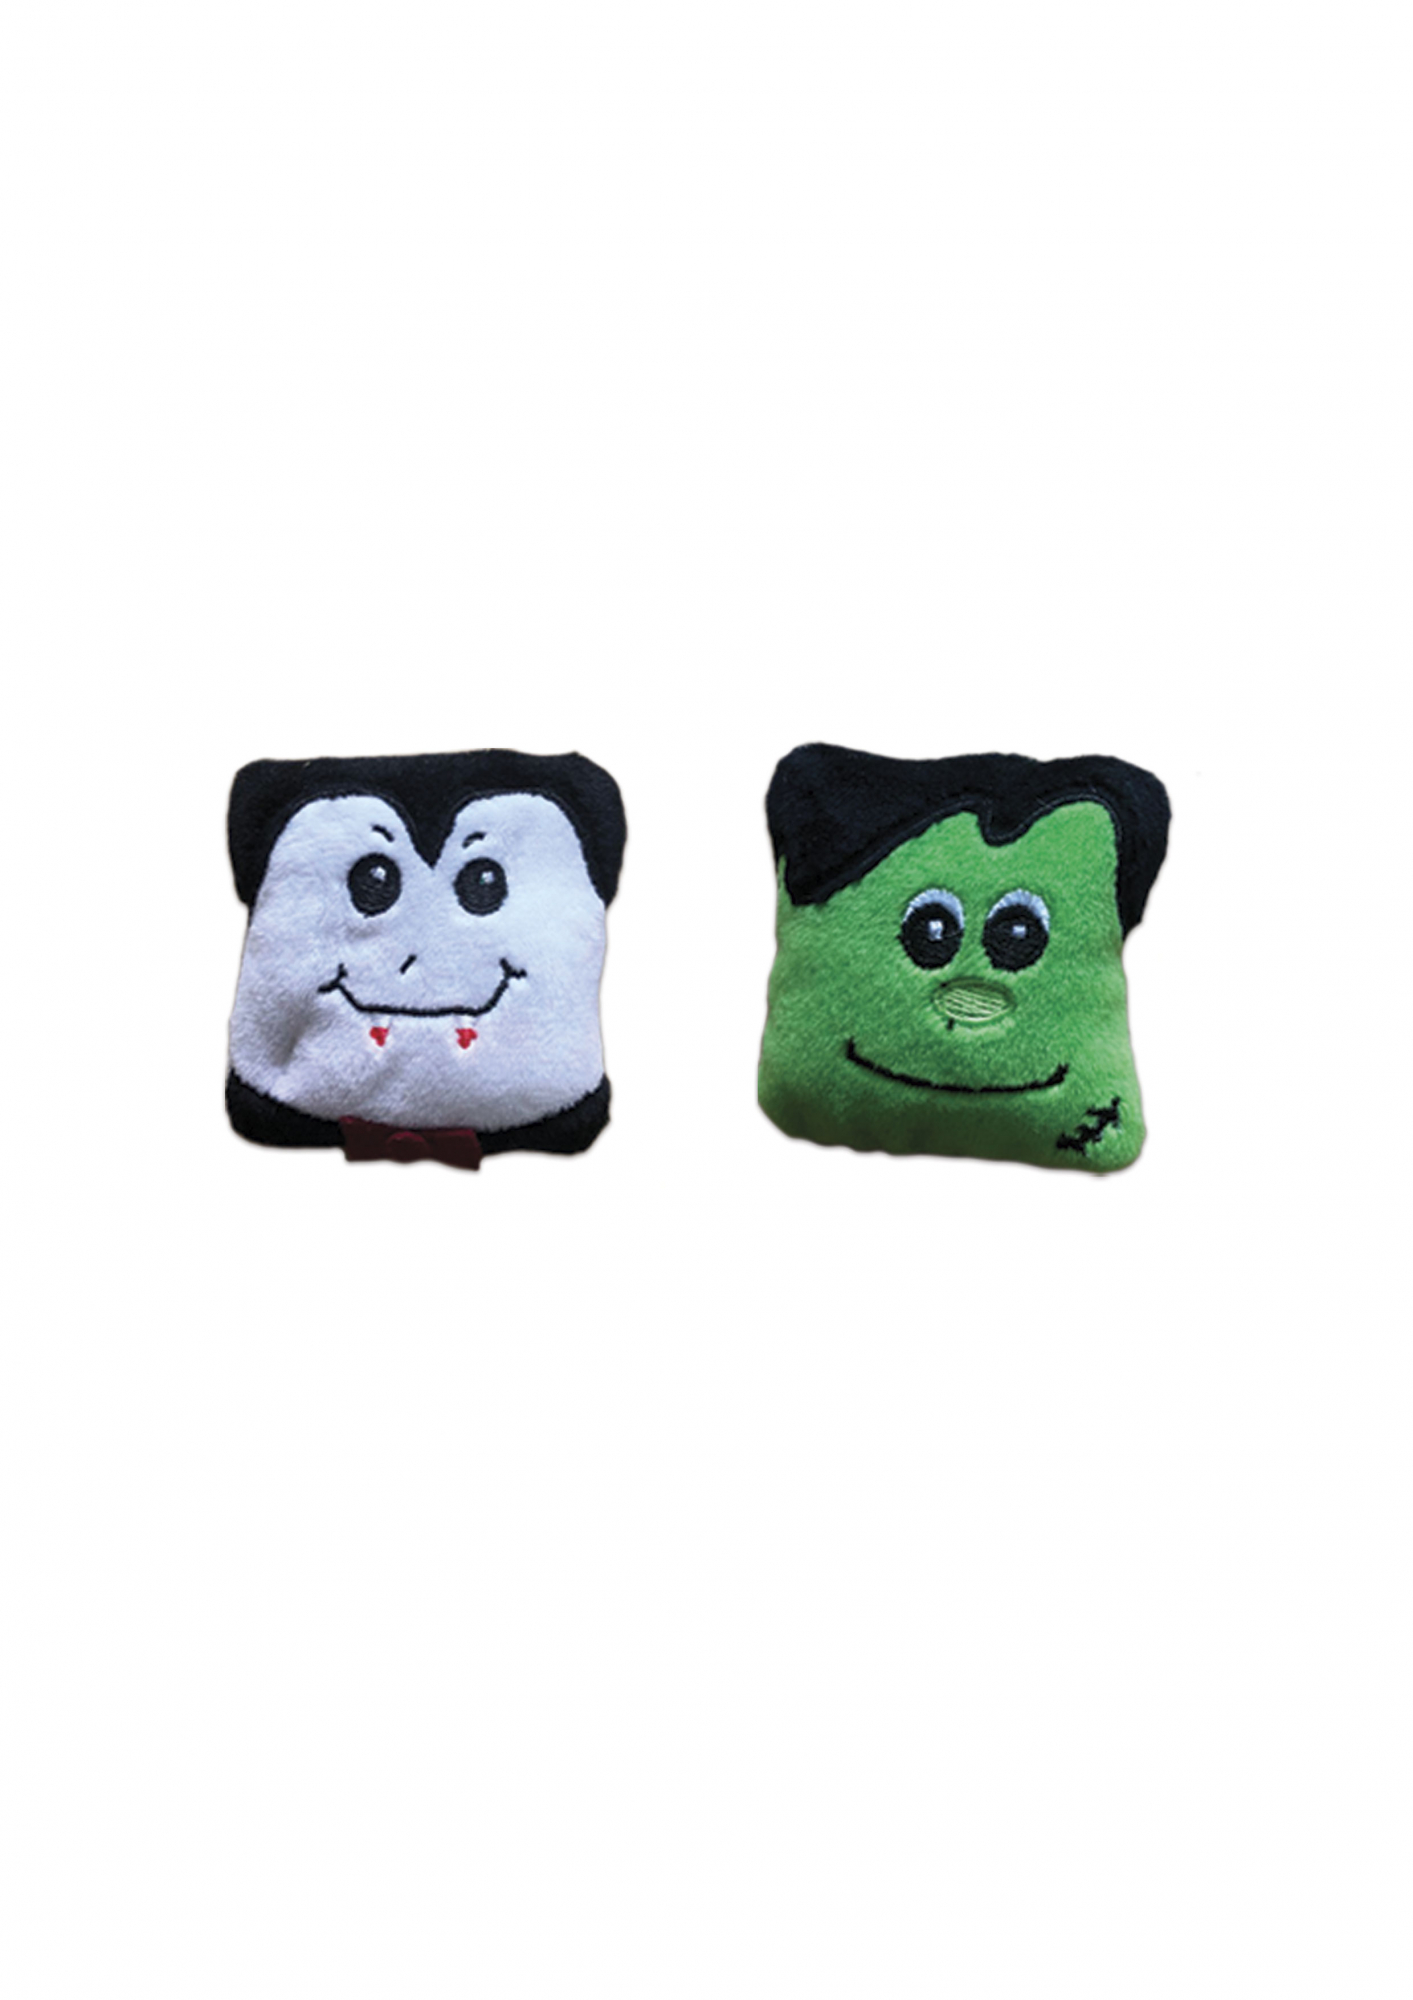 Spielzeug Frankenstein und Dracula mit Catnip für Katzen